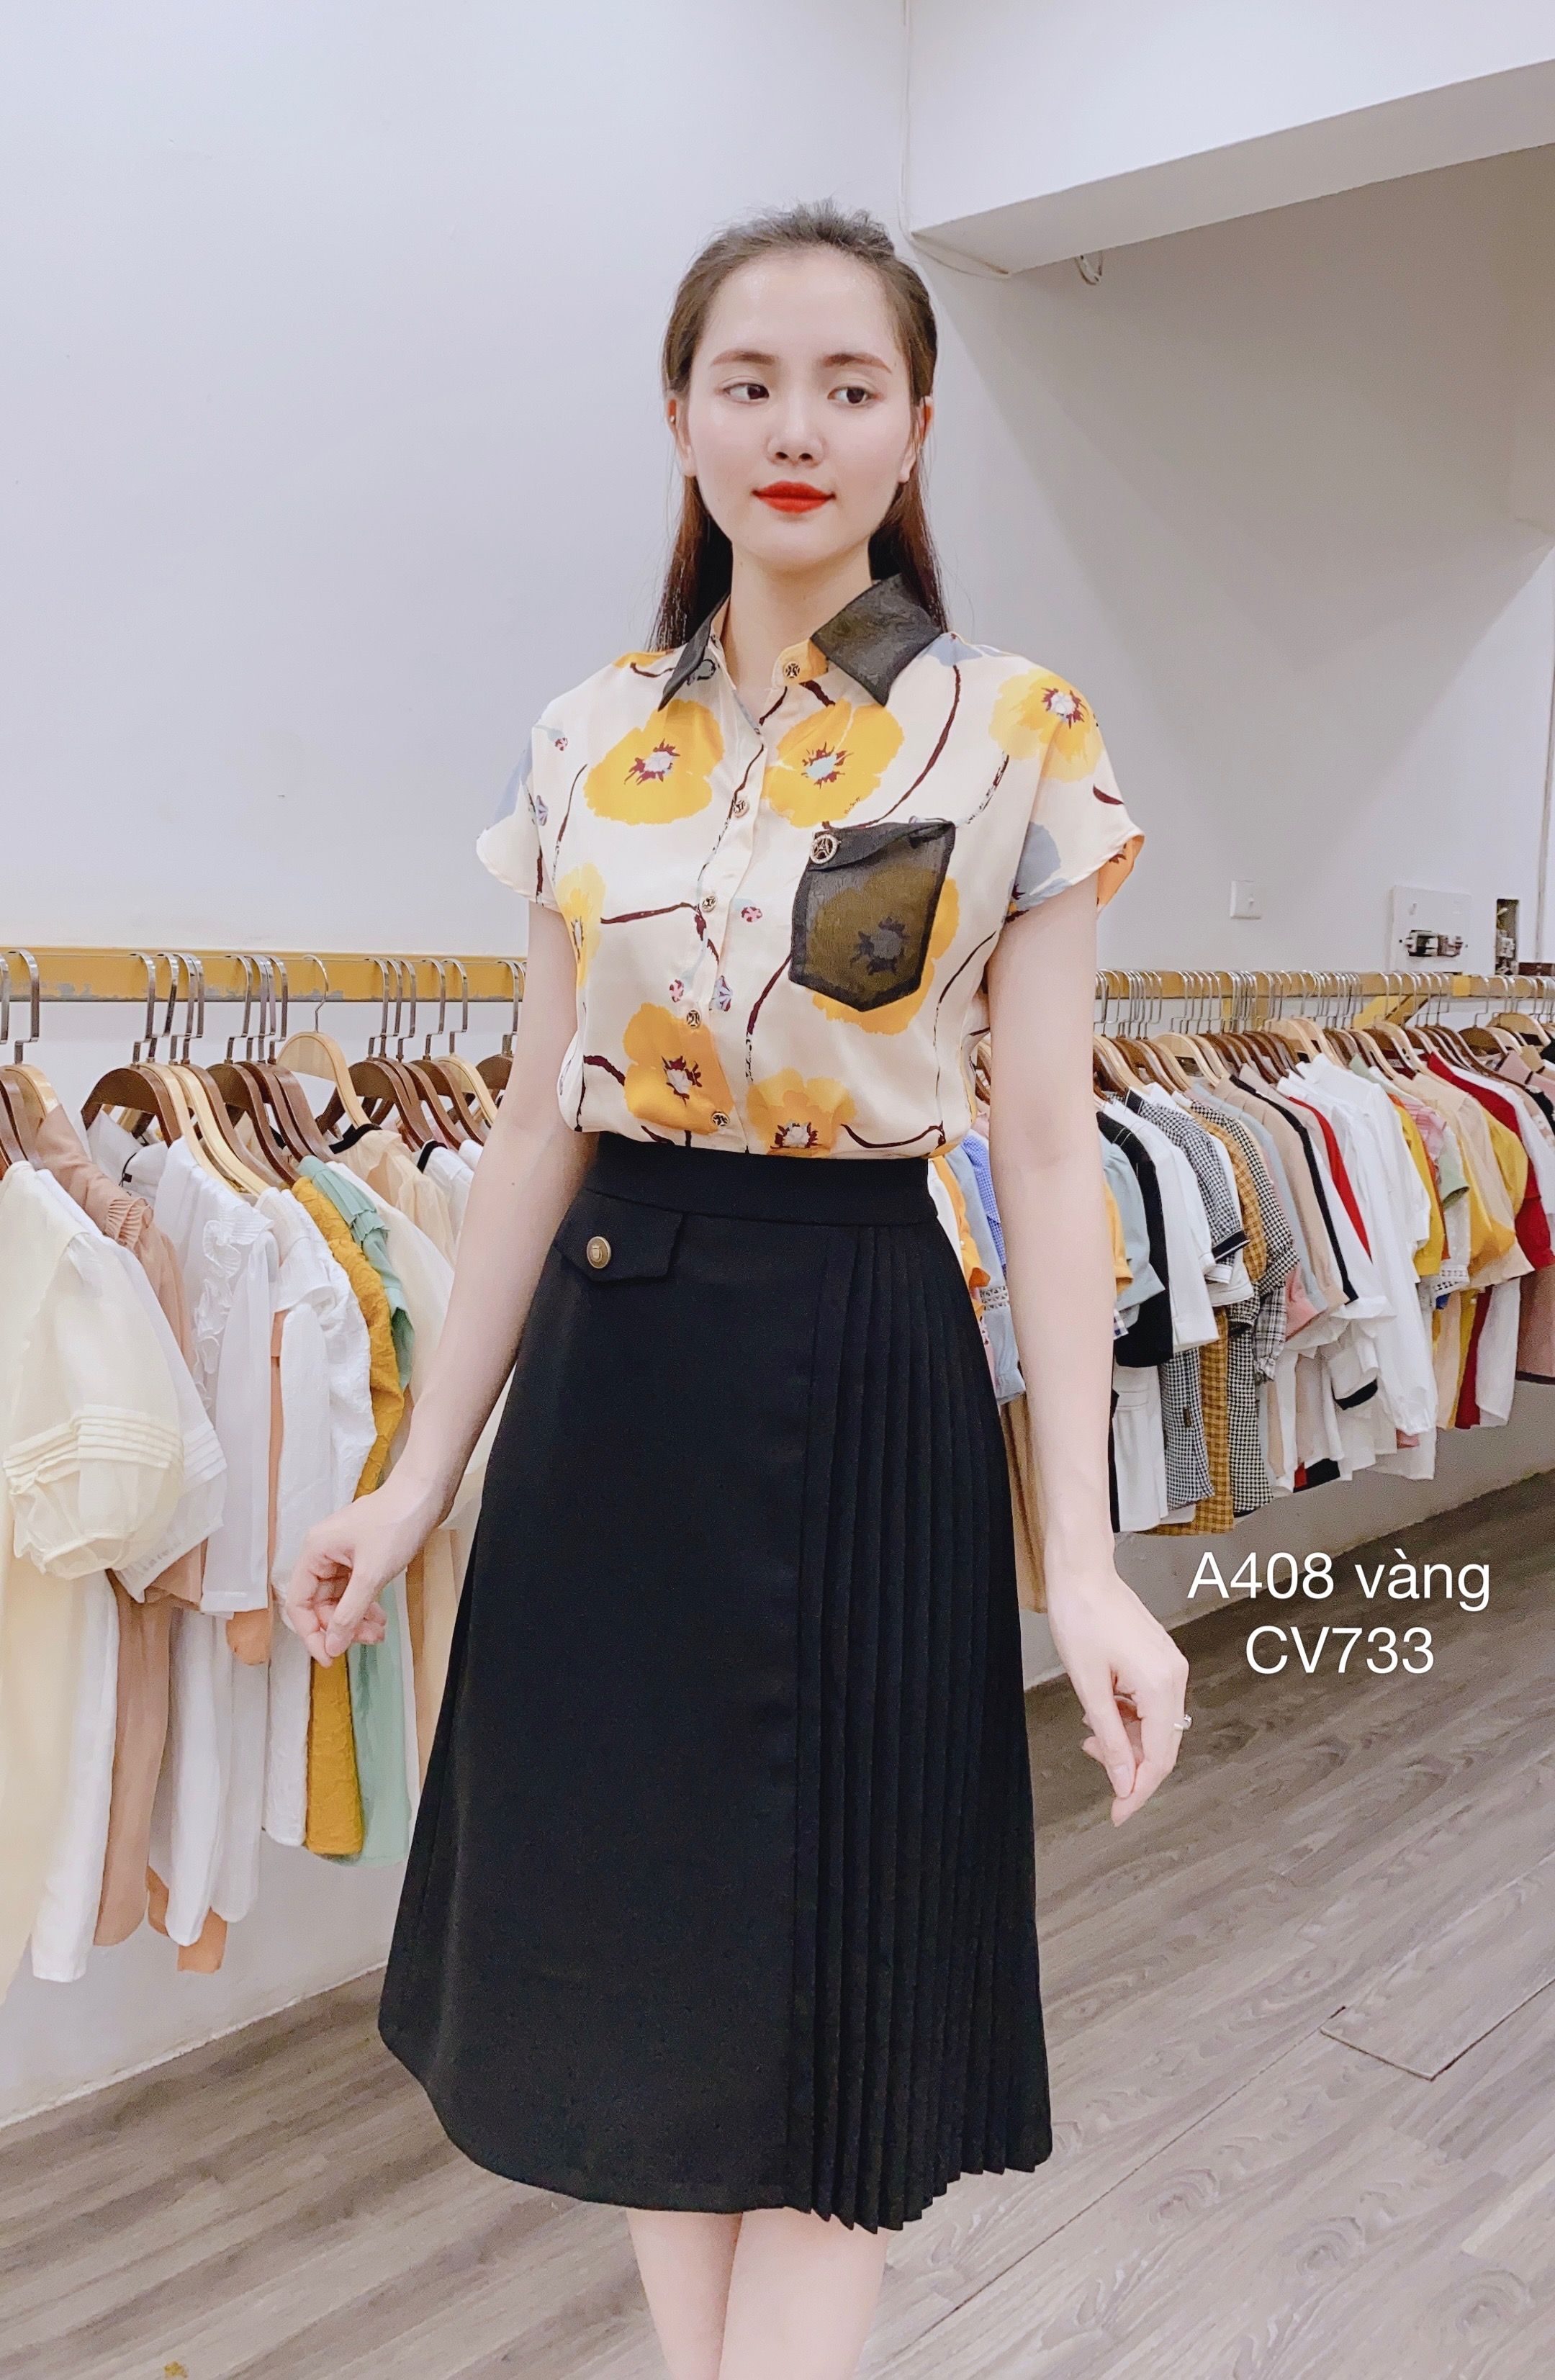 Chân váy chữ A - Đồng Phục Minh Tâm- May đồng phục công sở chuyên nghiệp